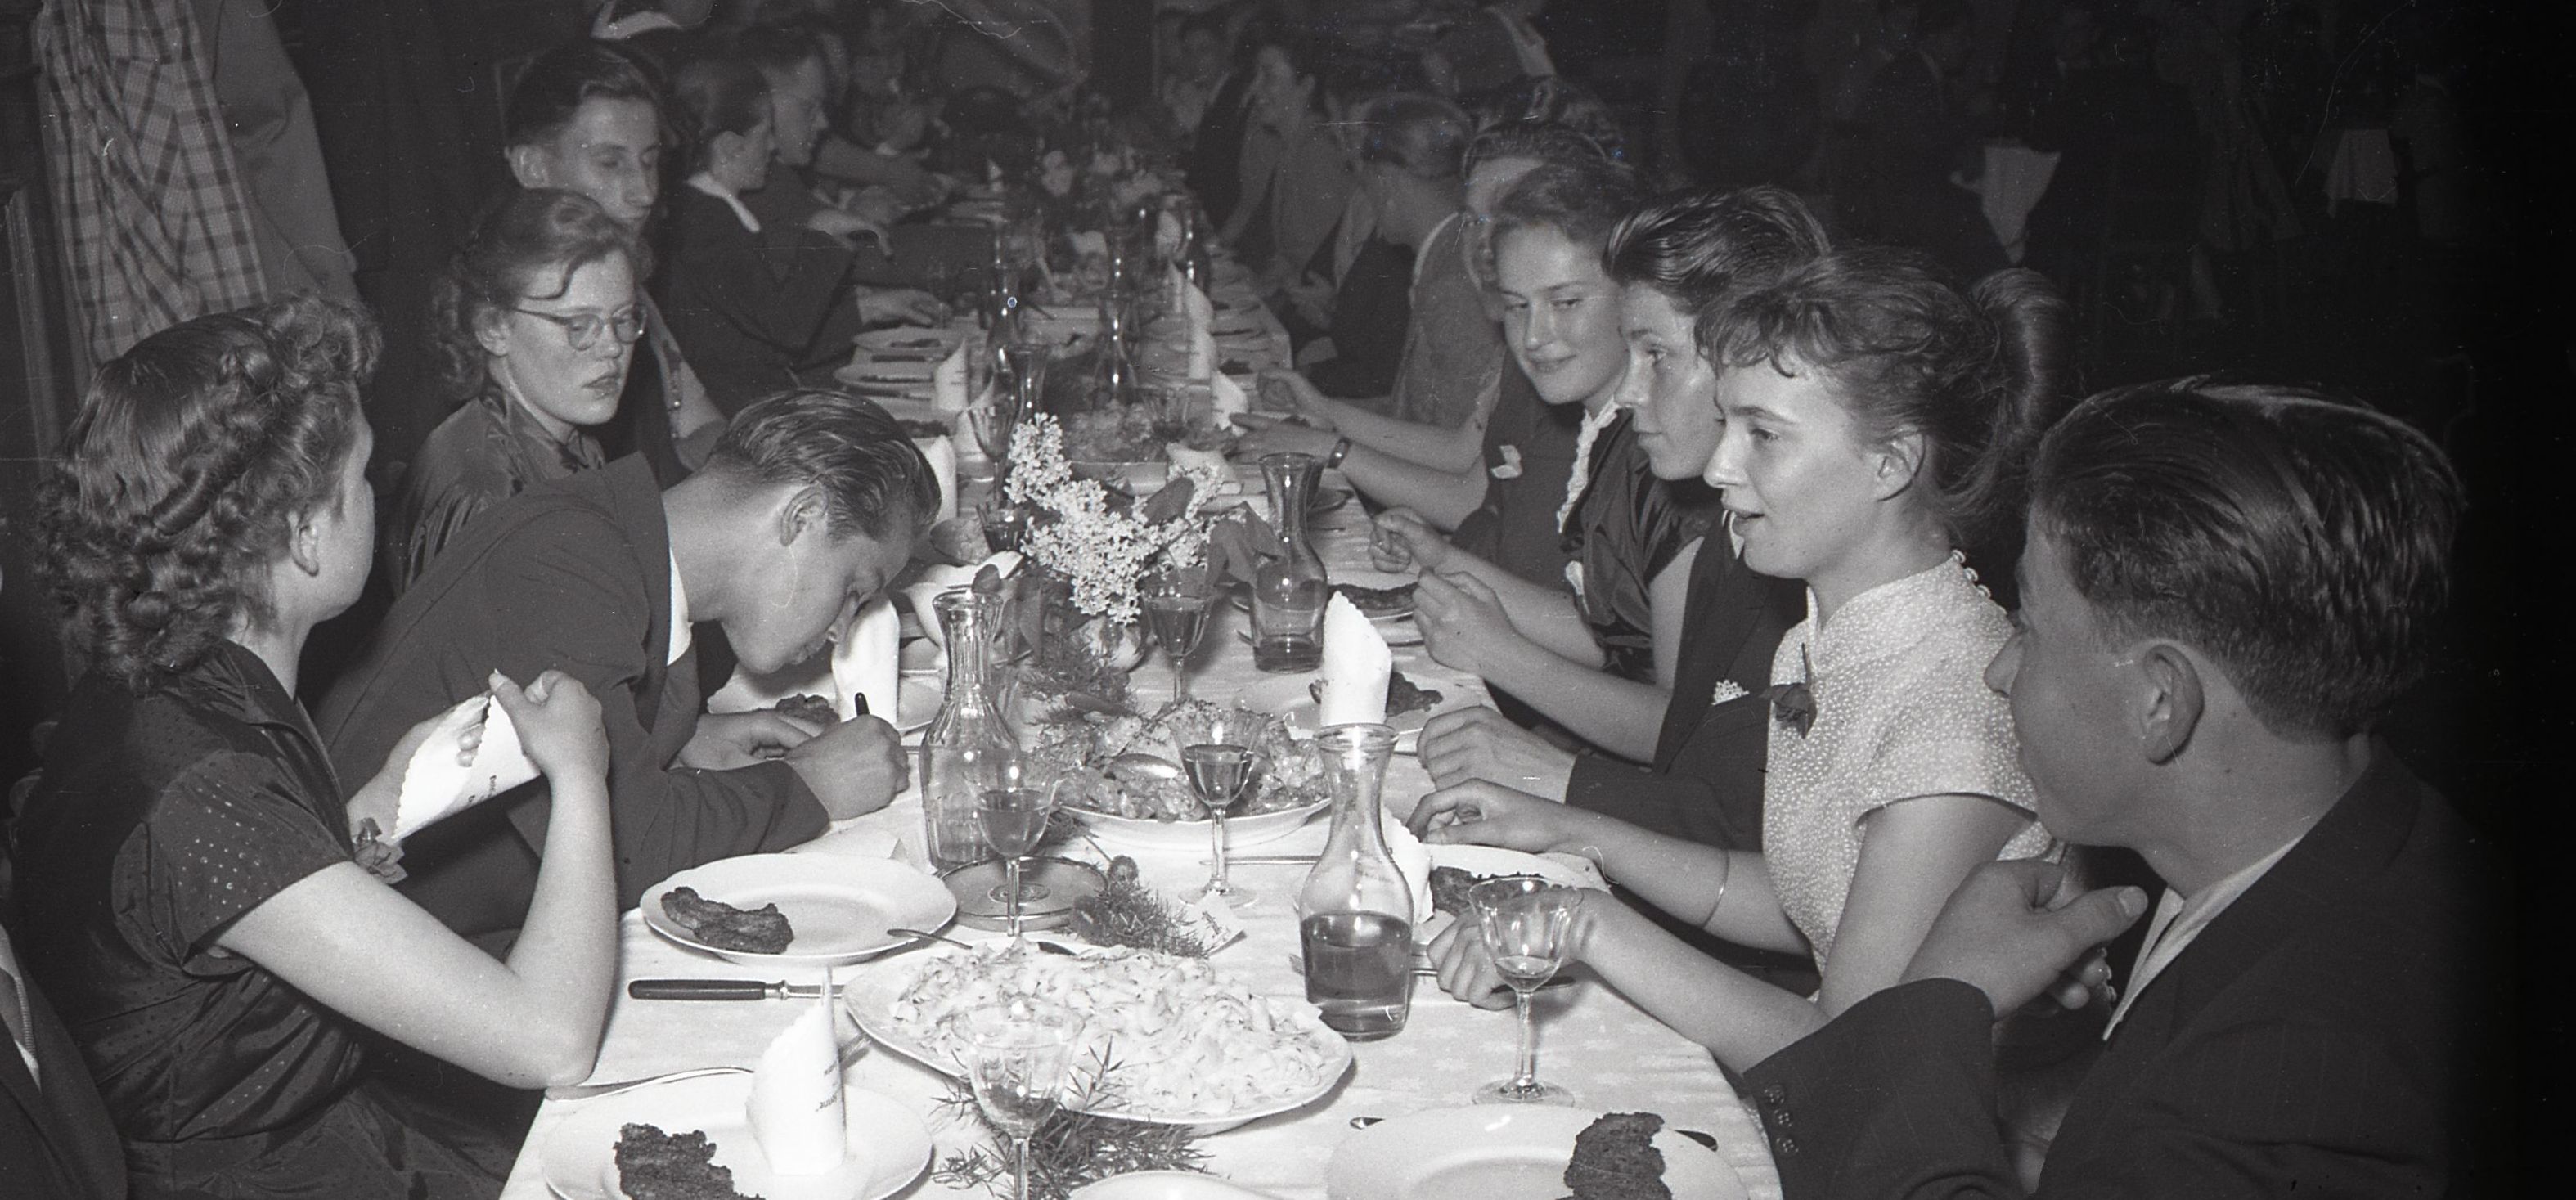 Die jungen Frauen und Männer im Gespräch beim Essen